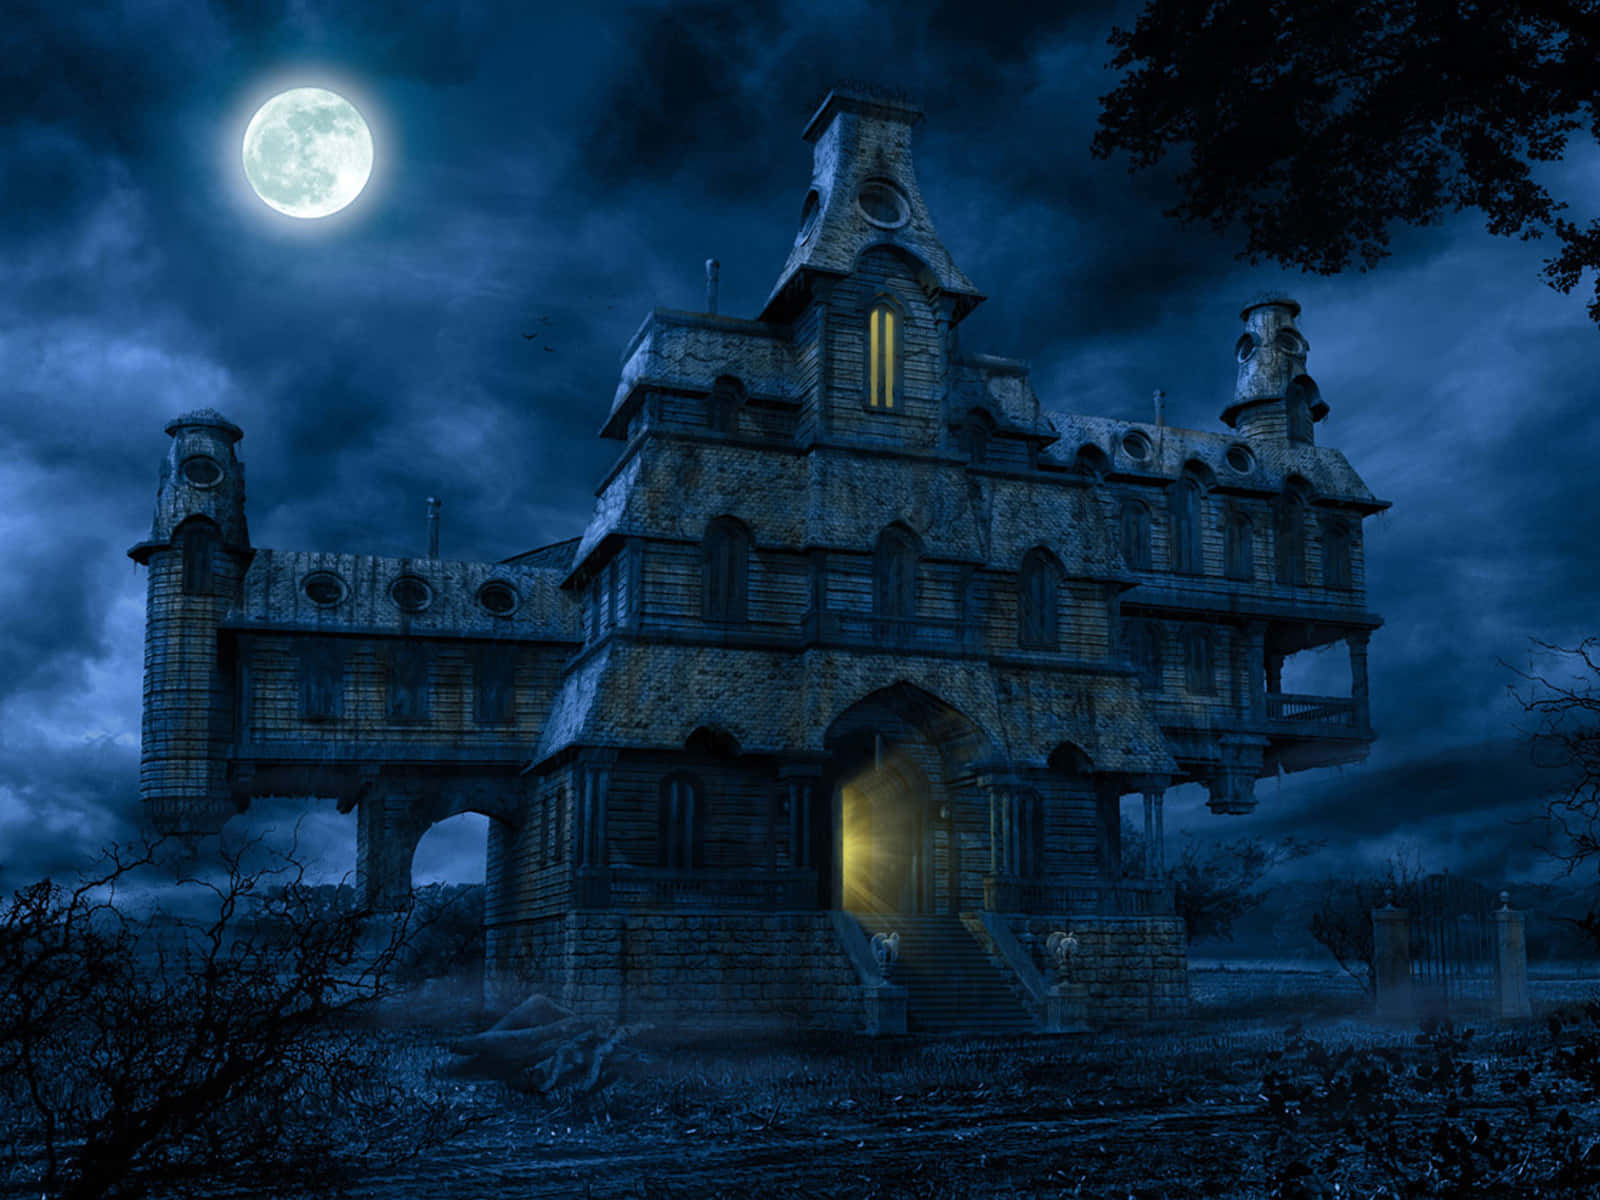 Bliredo Att Dyka In I Den Spöklika Halloween-andan Med Denna Klassiska Gotiska Landskap